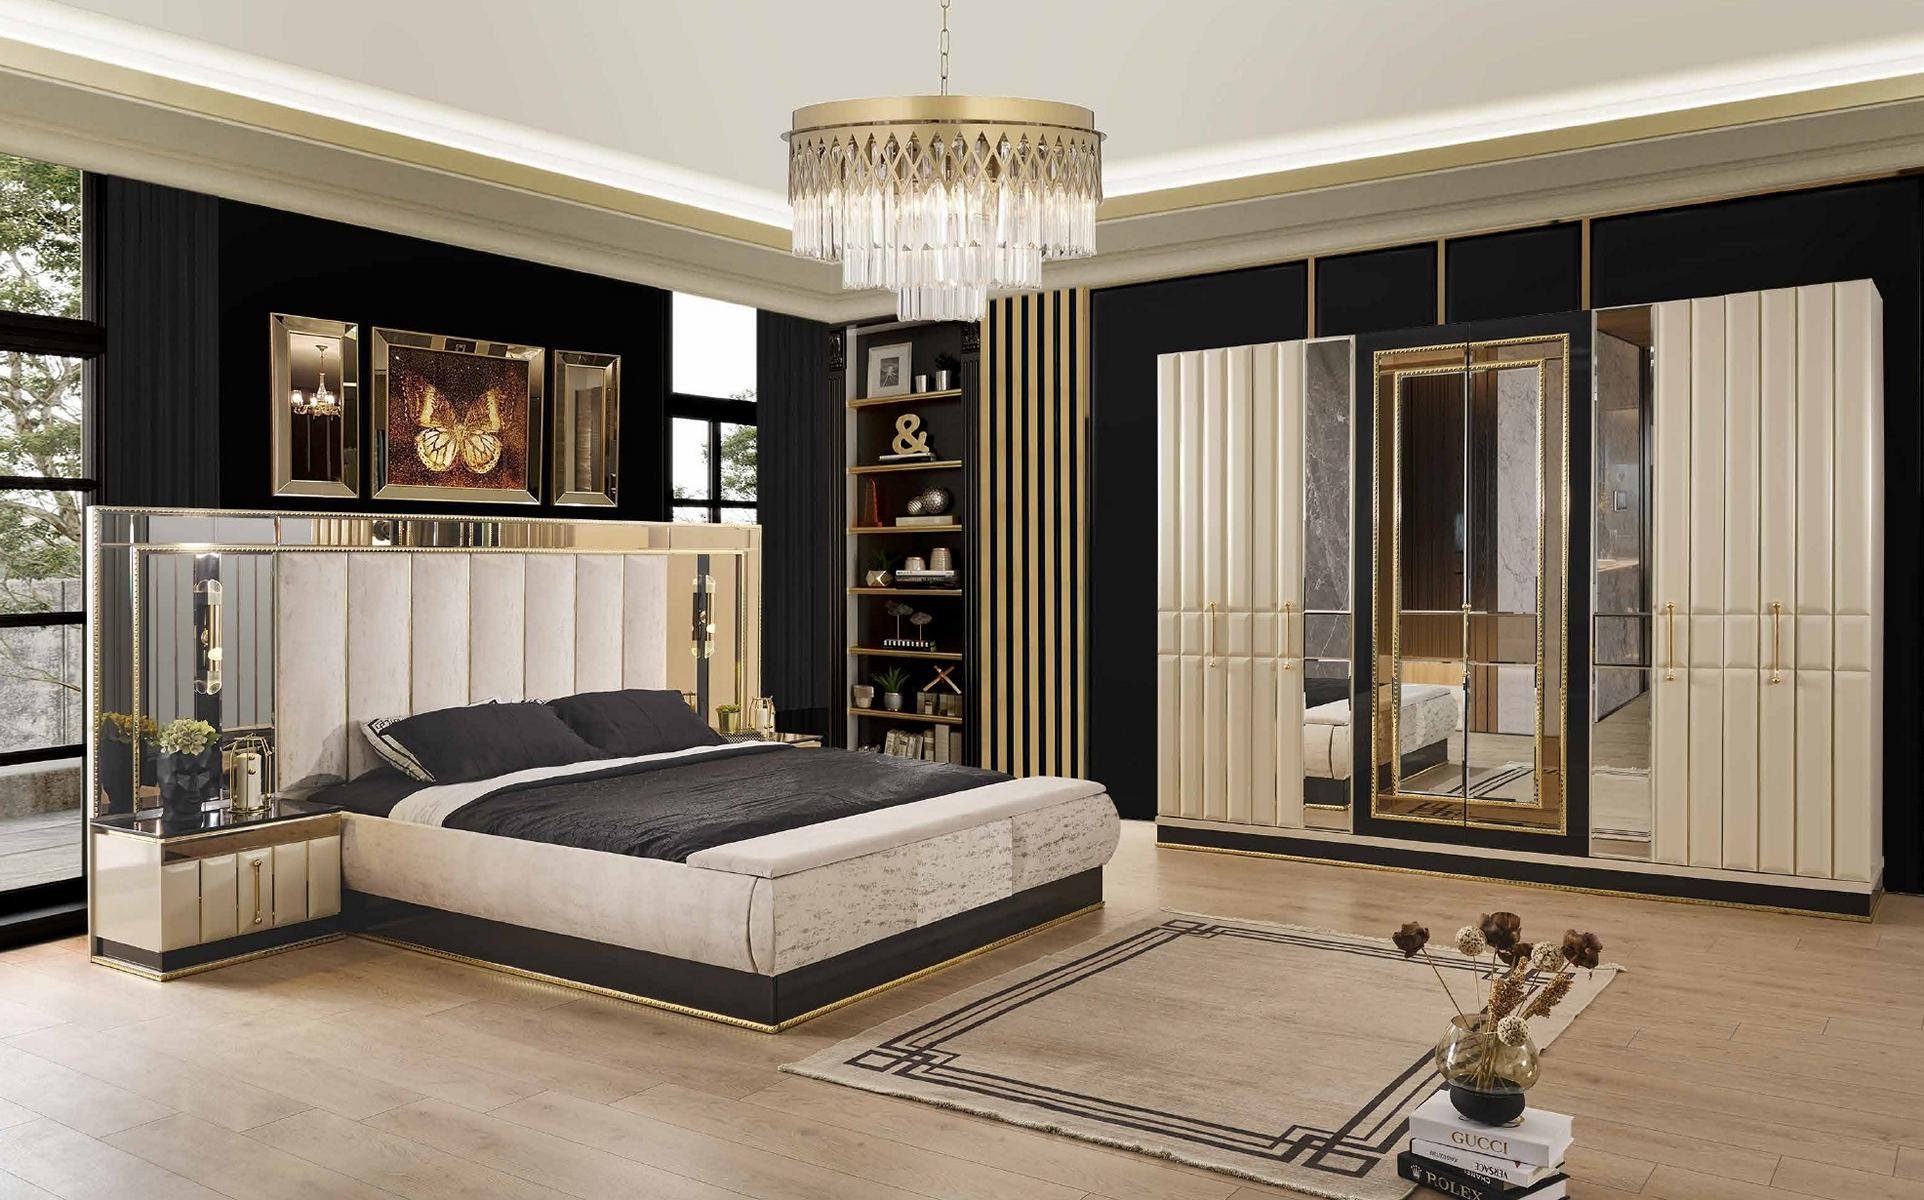 JVmoebel Schlafzimmer-Set Bett Nachttisch Kleiderschrank 4 tlg Set Design  Modern Luxus Betten